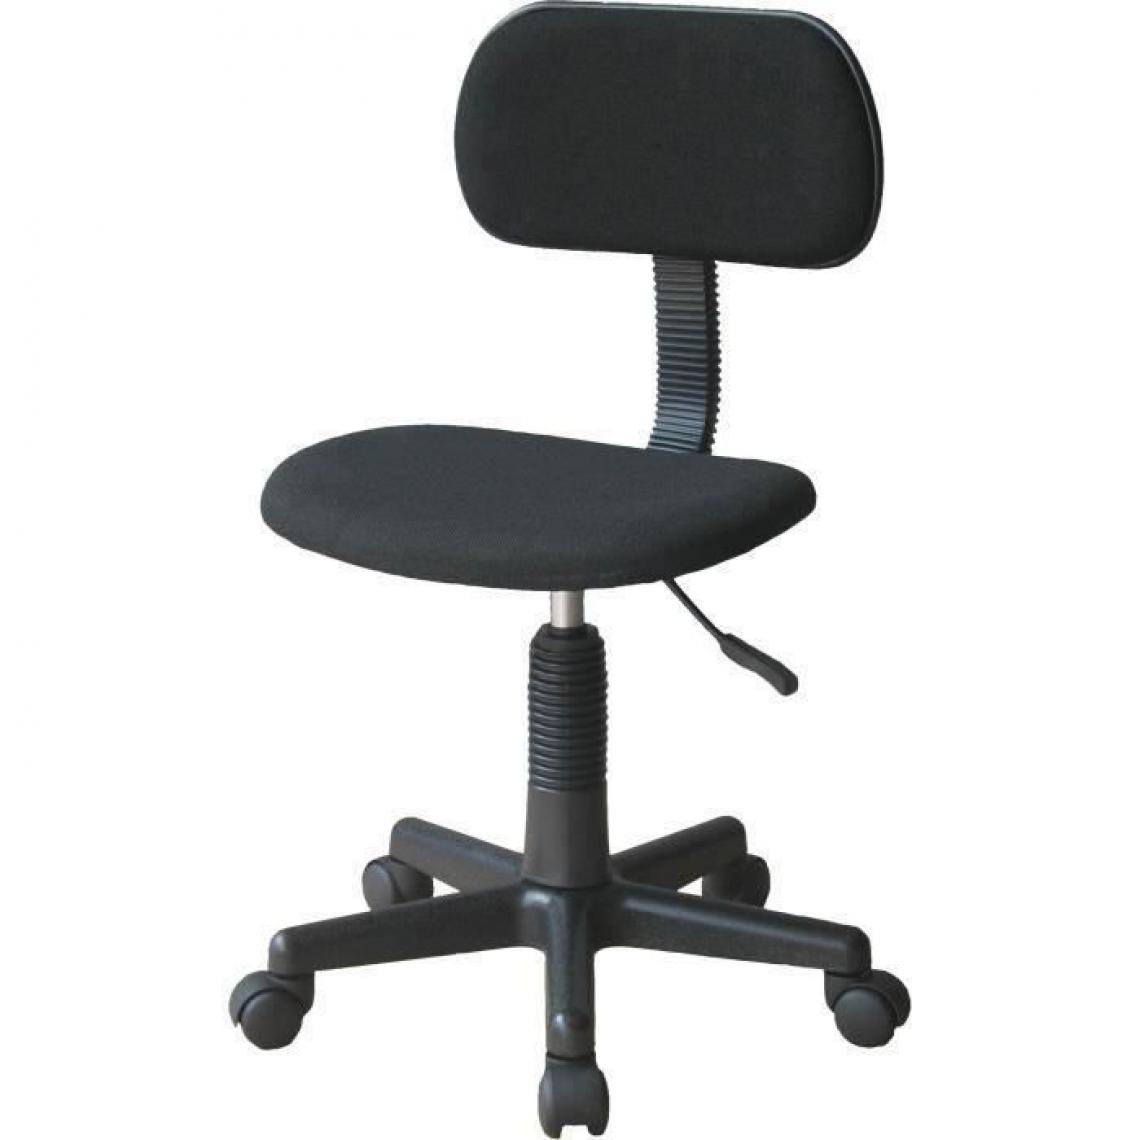 Cstore - LEMPA - fauteuil de bureau - réglable en hauteur 71 - 83 cm - tissu noir - Chaises